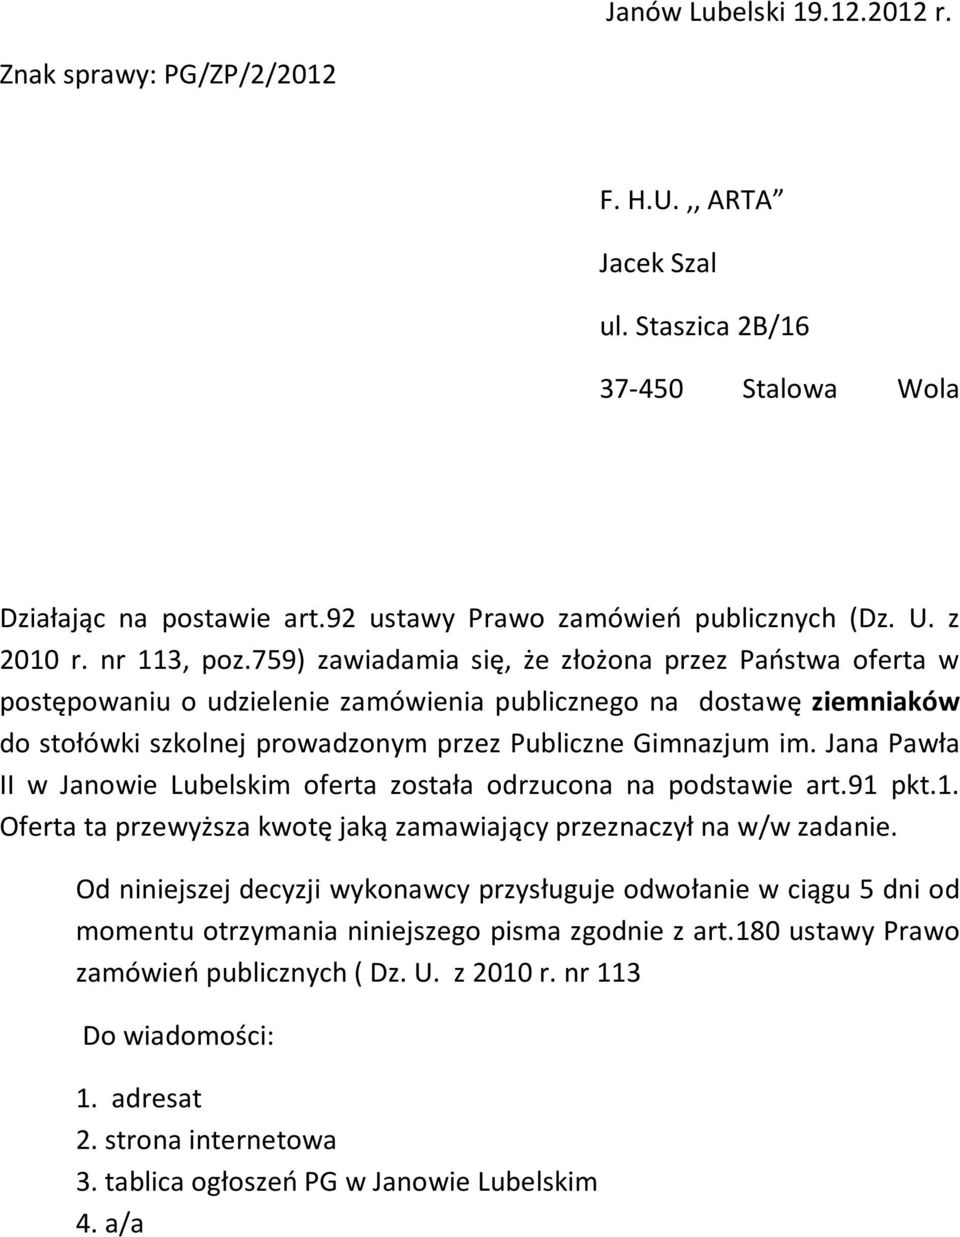 Jana Pawła II w Janowie Lubelskim oferta została odrzucona na podstawie art.91 pkt.1. Oferta ta przewyższa kwotę jaką zamawiający przeznaczył na w/w zadanie.